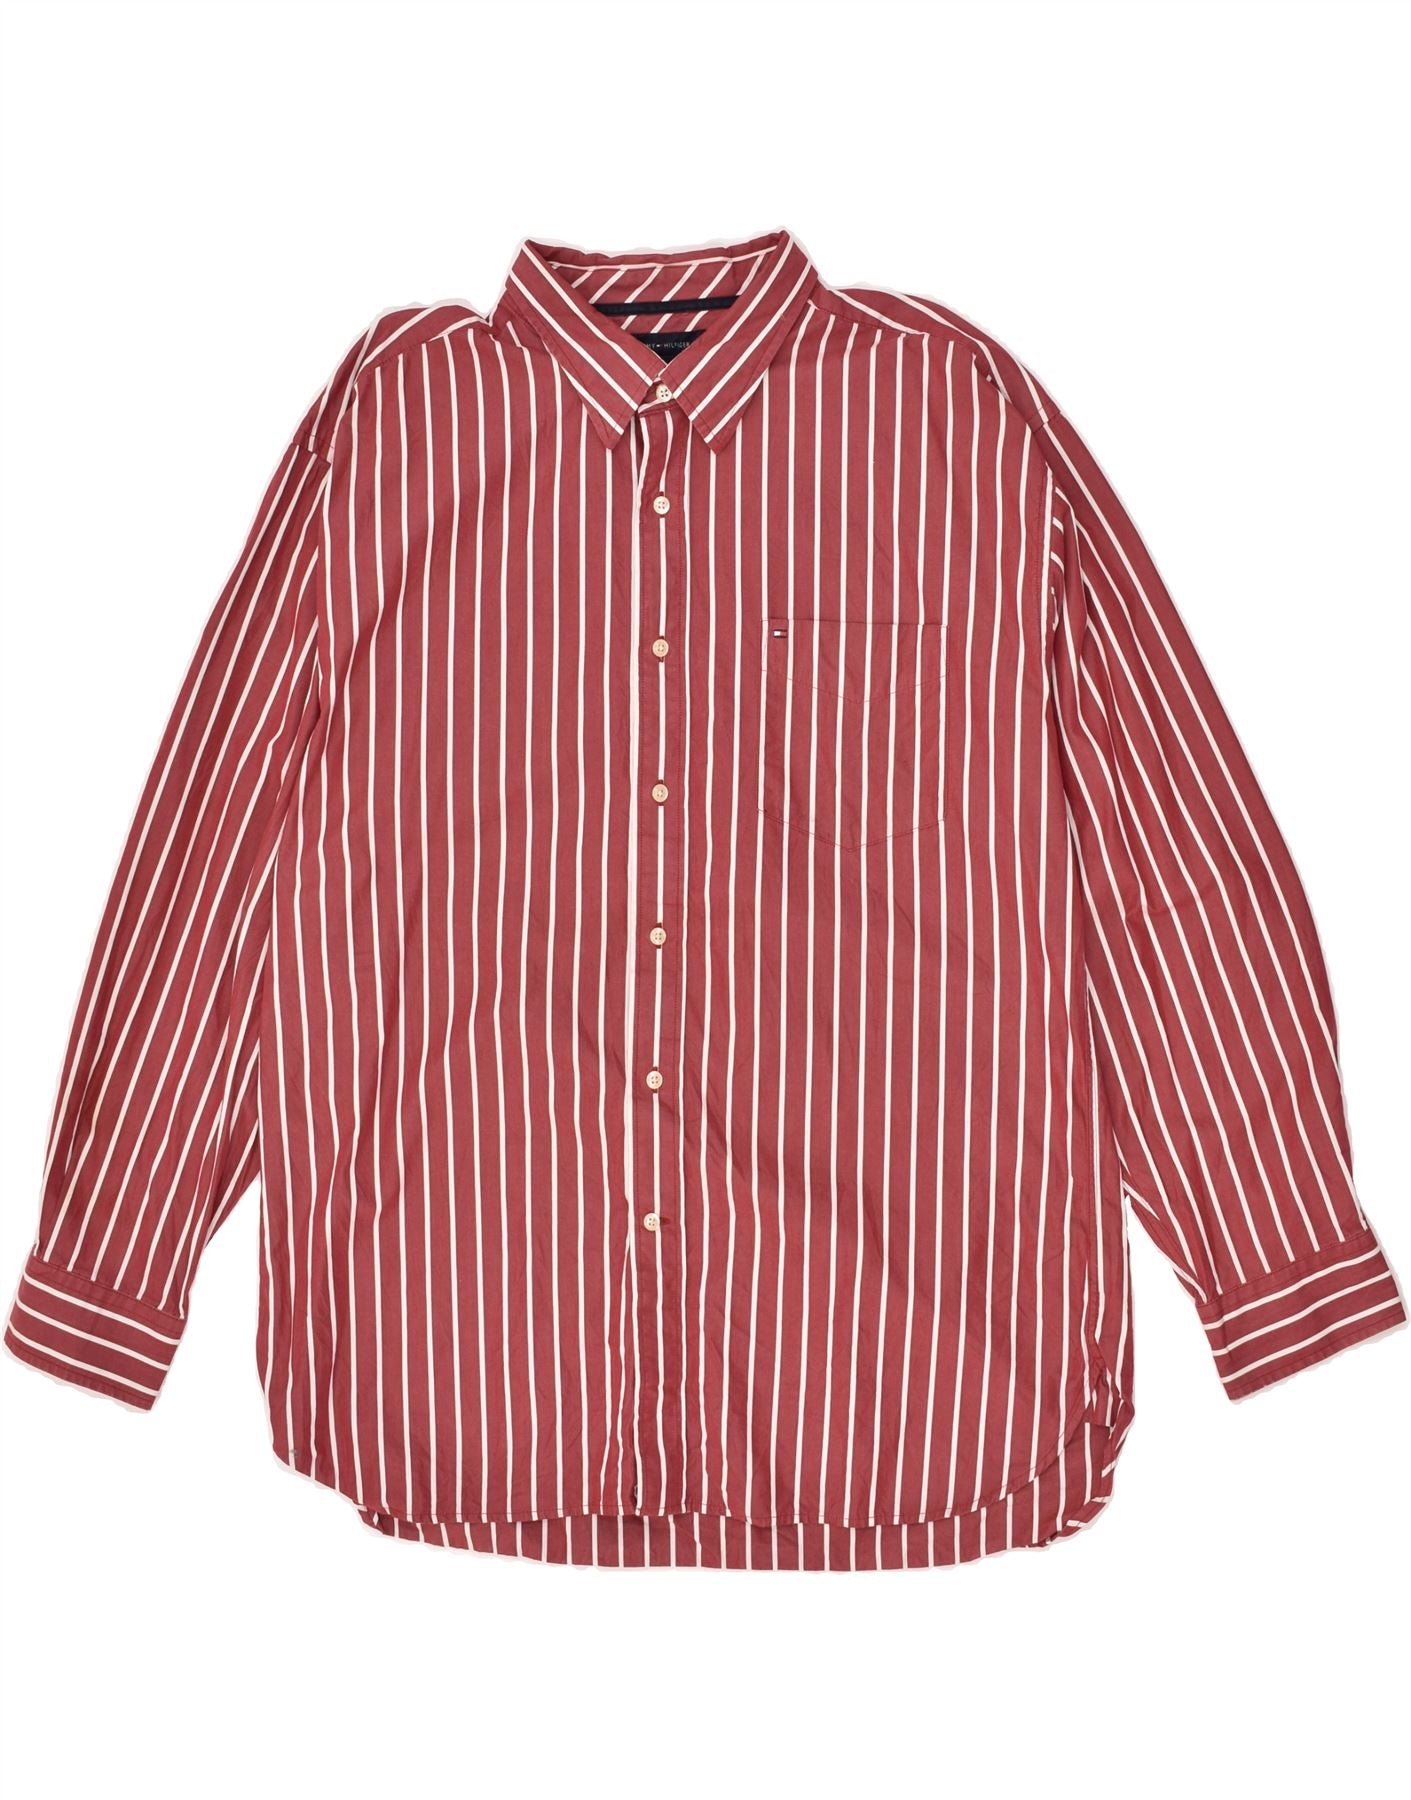 Buy TOMMY HILFIGER Red Mens Regular Fit Stripes Shirt